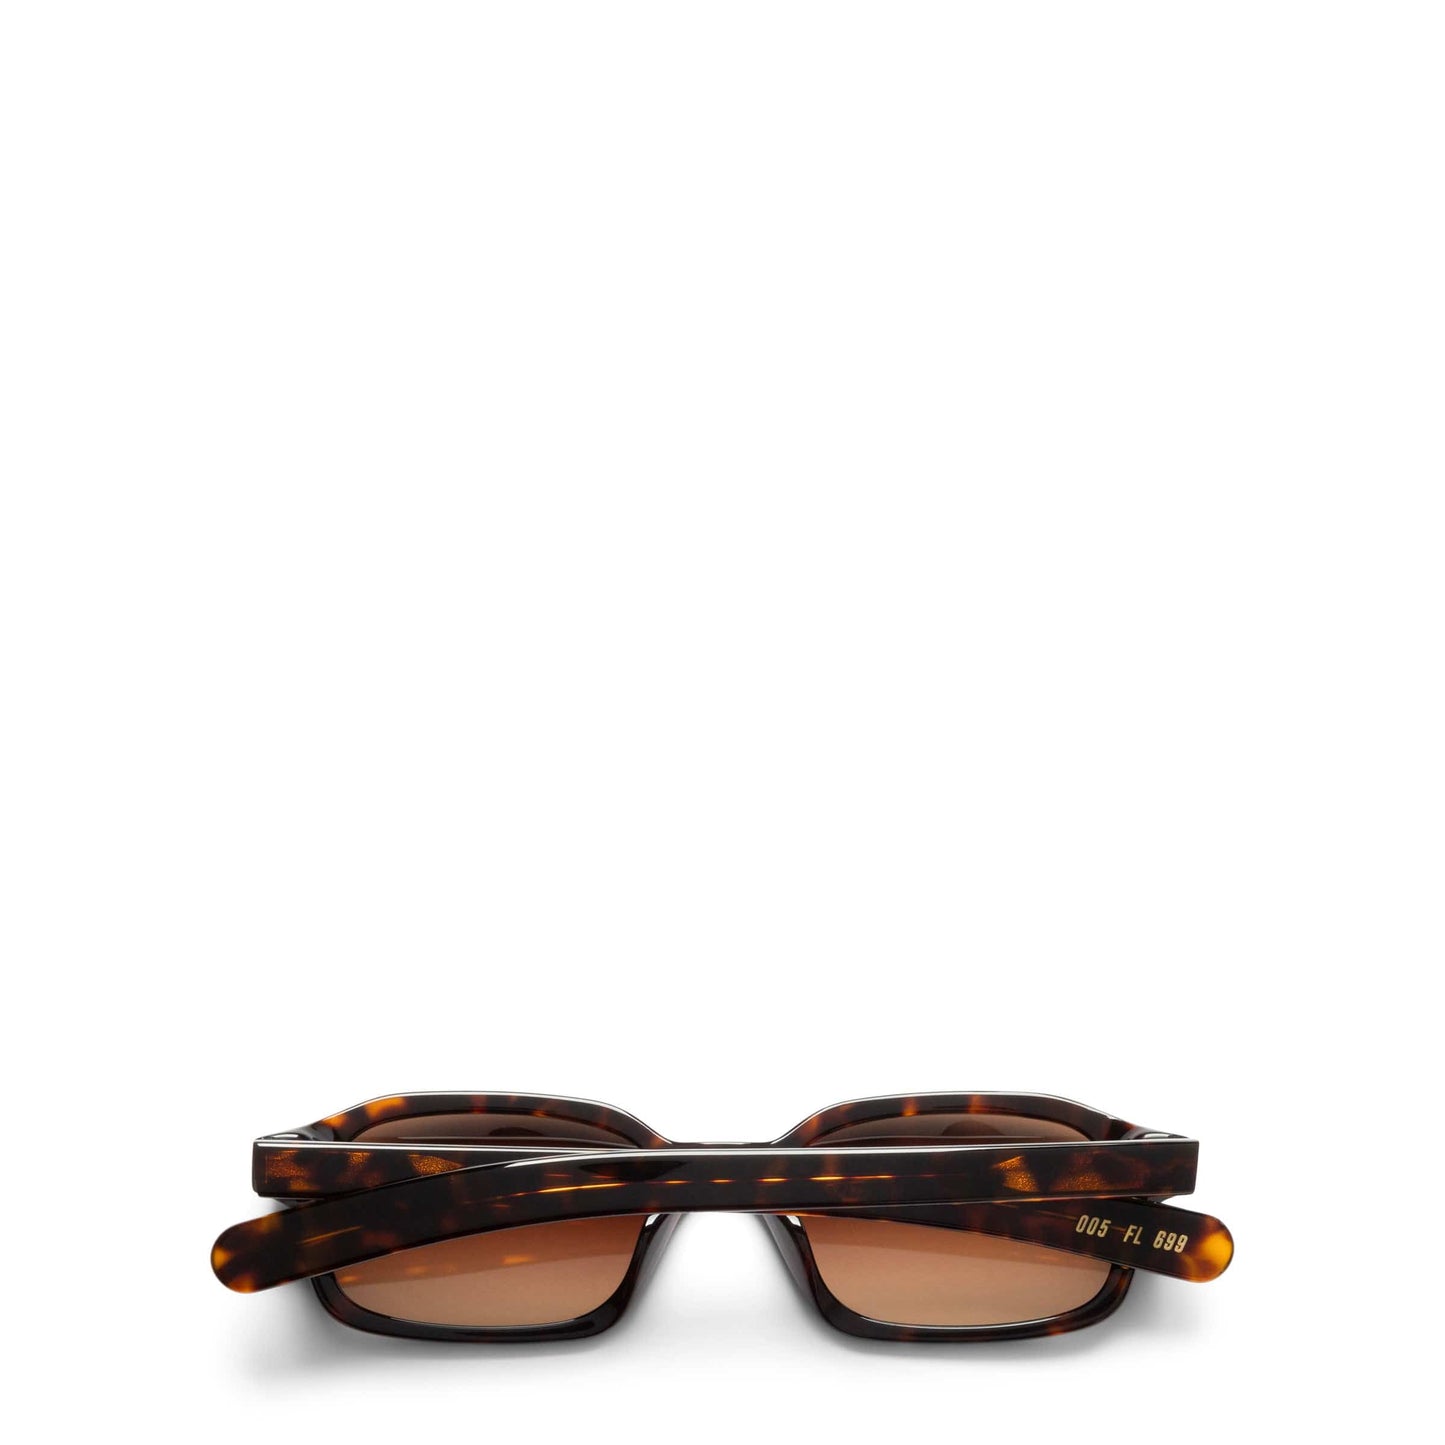 FLATLIST Eyewear DARK TORTOISE/BROWN GRADIENT LENS / O/S HANKY